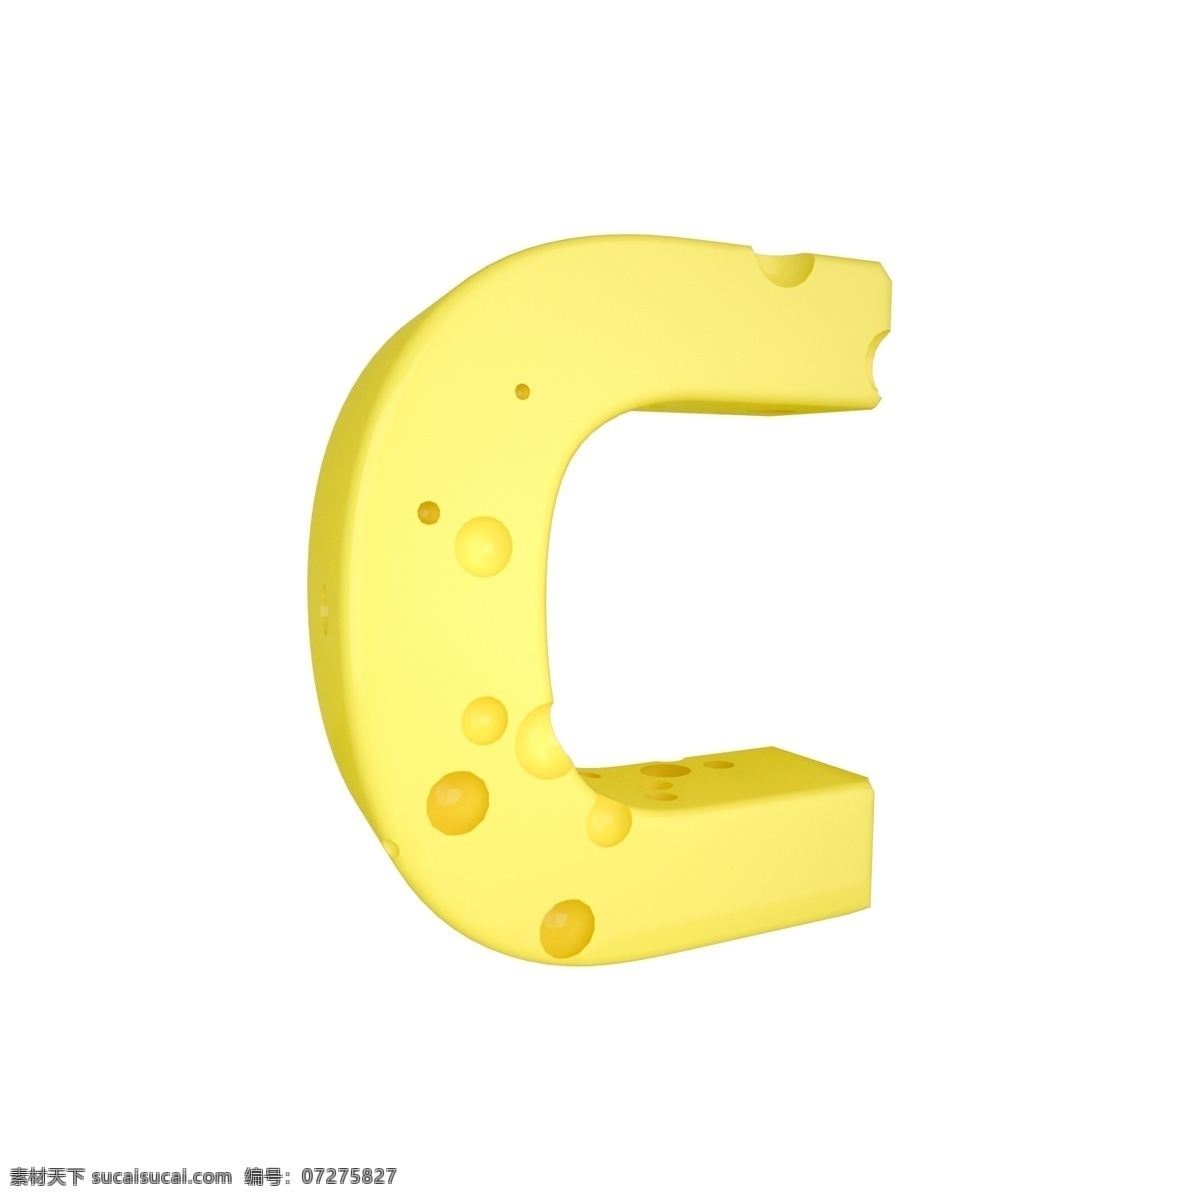 c4d 创意 奶酪 字母 c 装饰 3d 黄色 立体 食物 平面海报配图 电商淘宝装饰 可爱 柔和 字母c